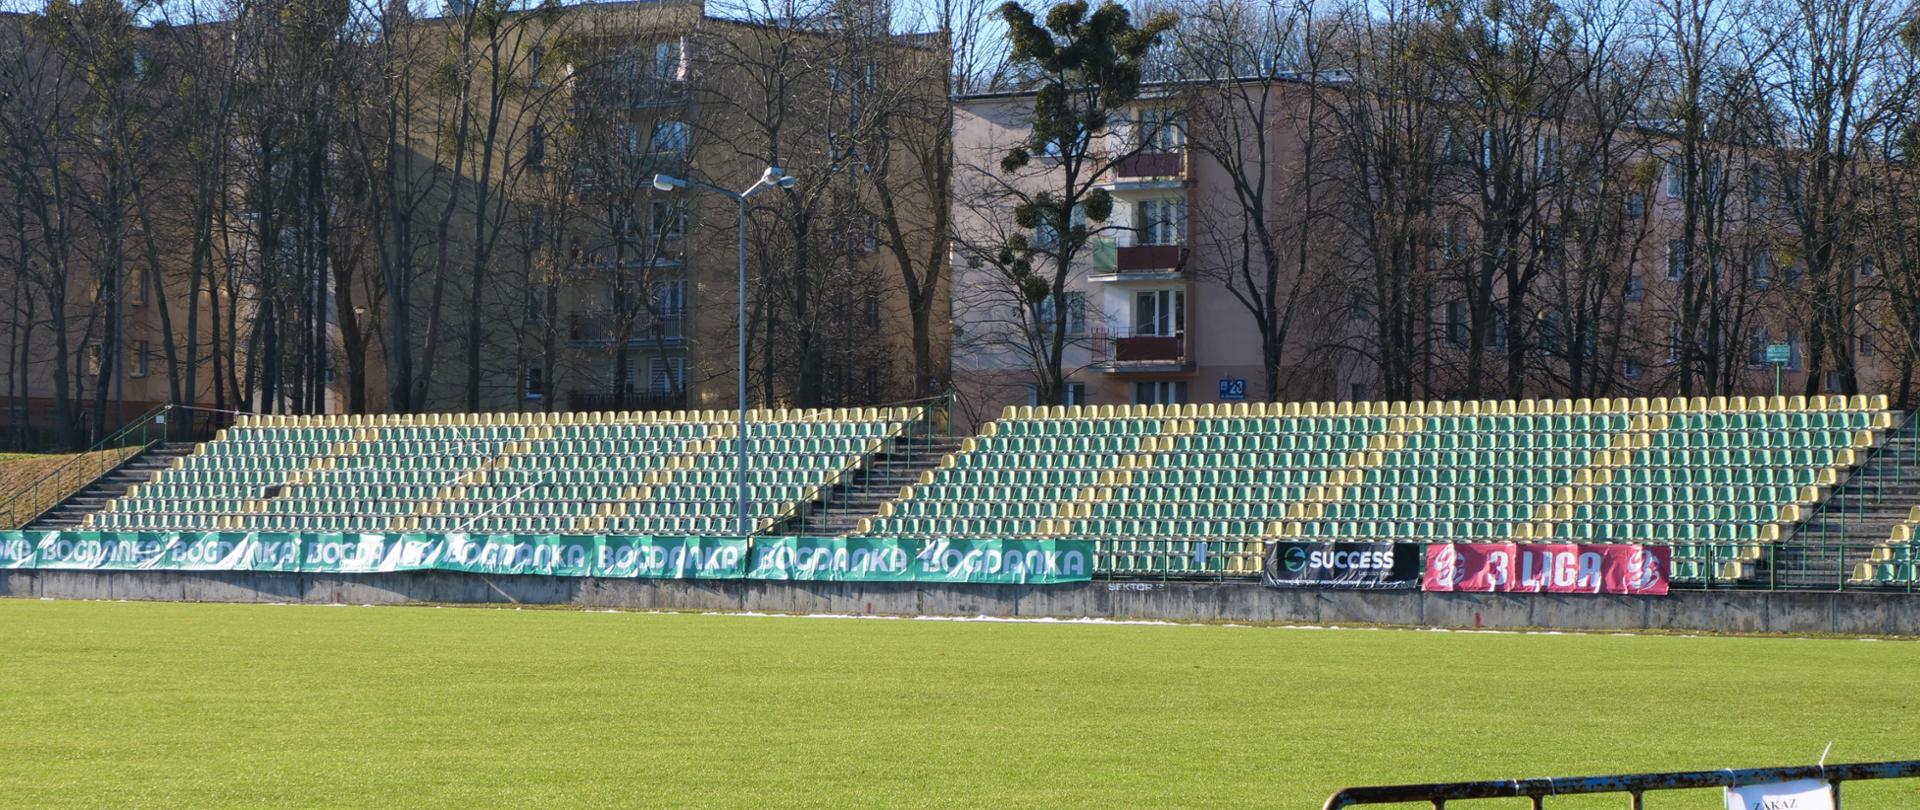 Zdjęcie przedstawia trybuny stadionu piłkarskiego oraz murawę trawiastą na pierwszym planie